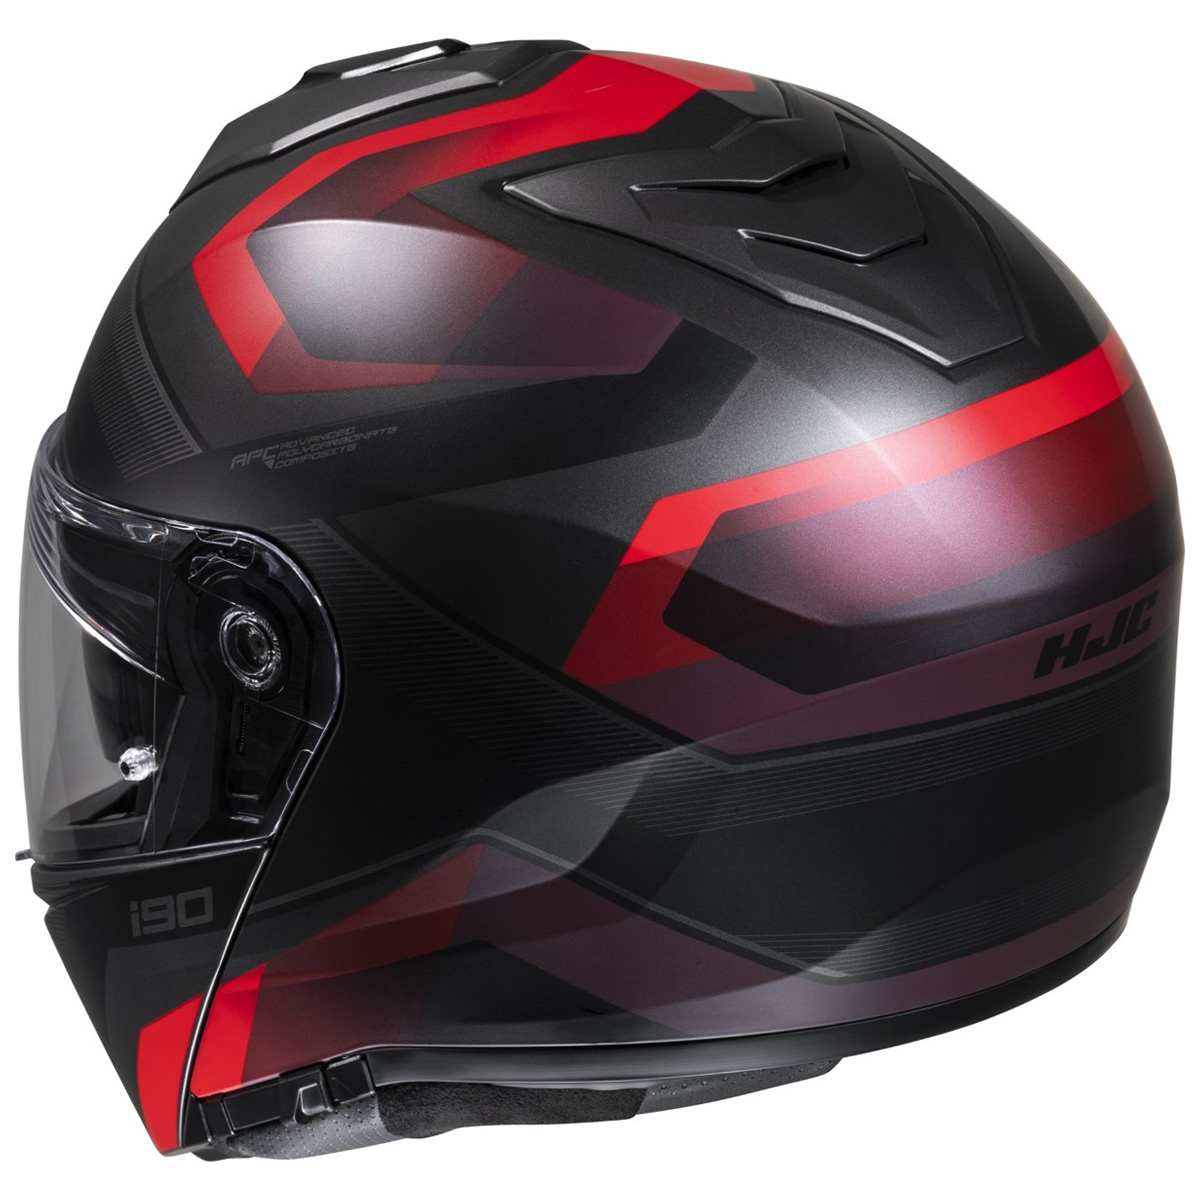 HJC Helm i90 Lark, schwarz-rot matt